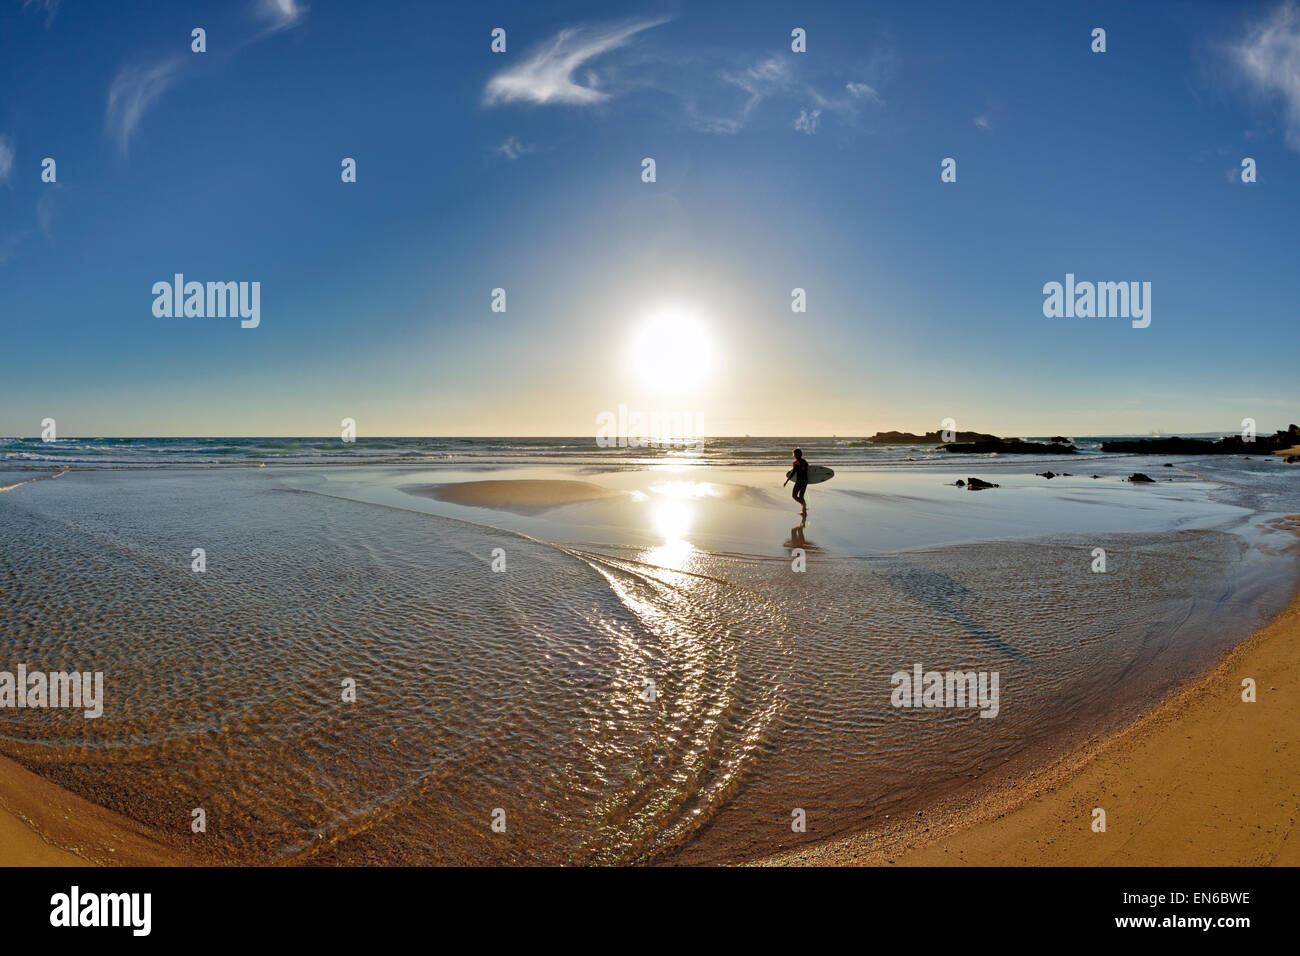 Portugal, Alentejo: Lonely surfer walking at scenic beach in Porto Covo Stock Photo